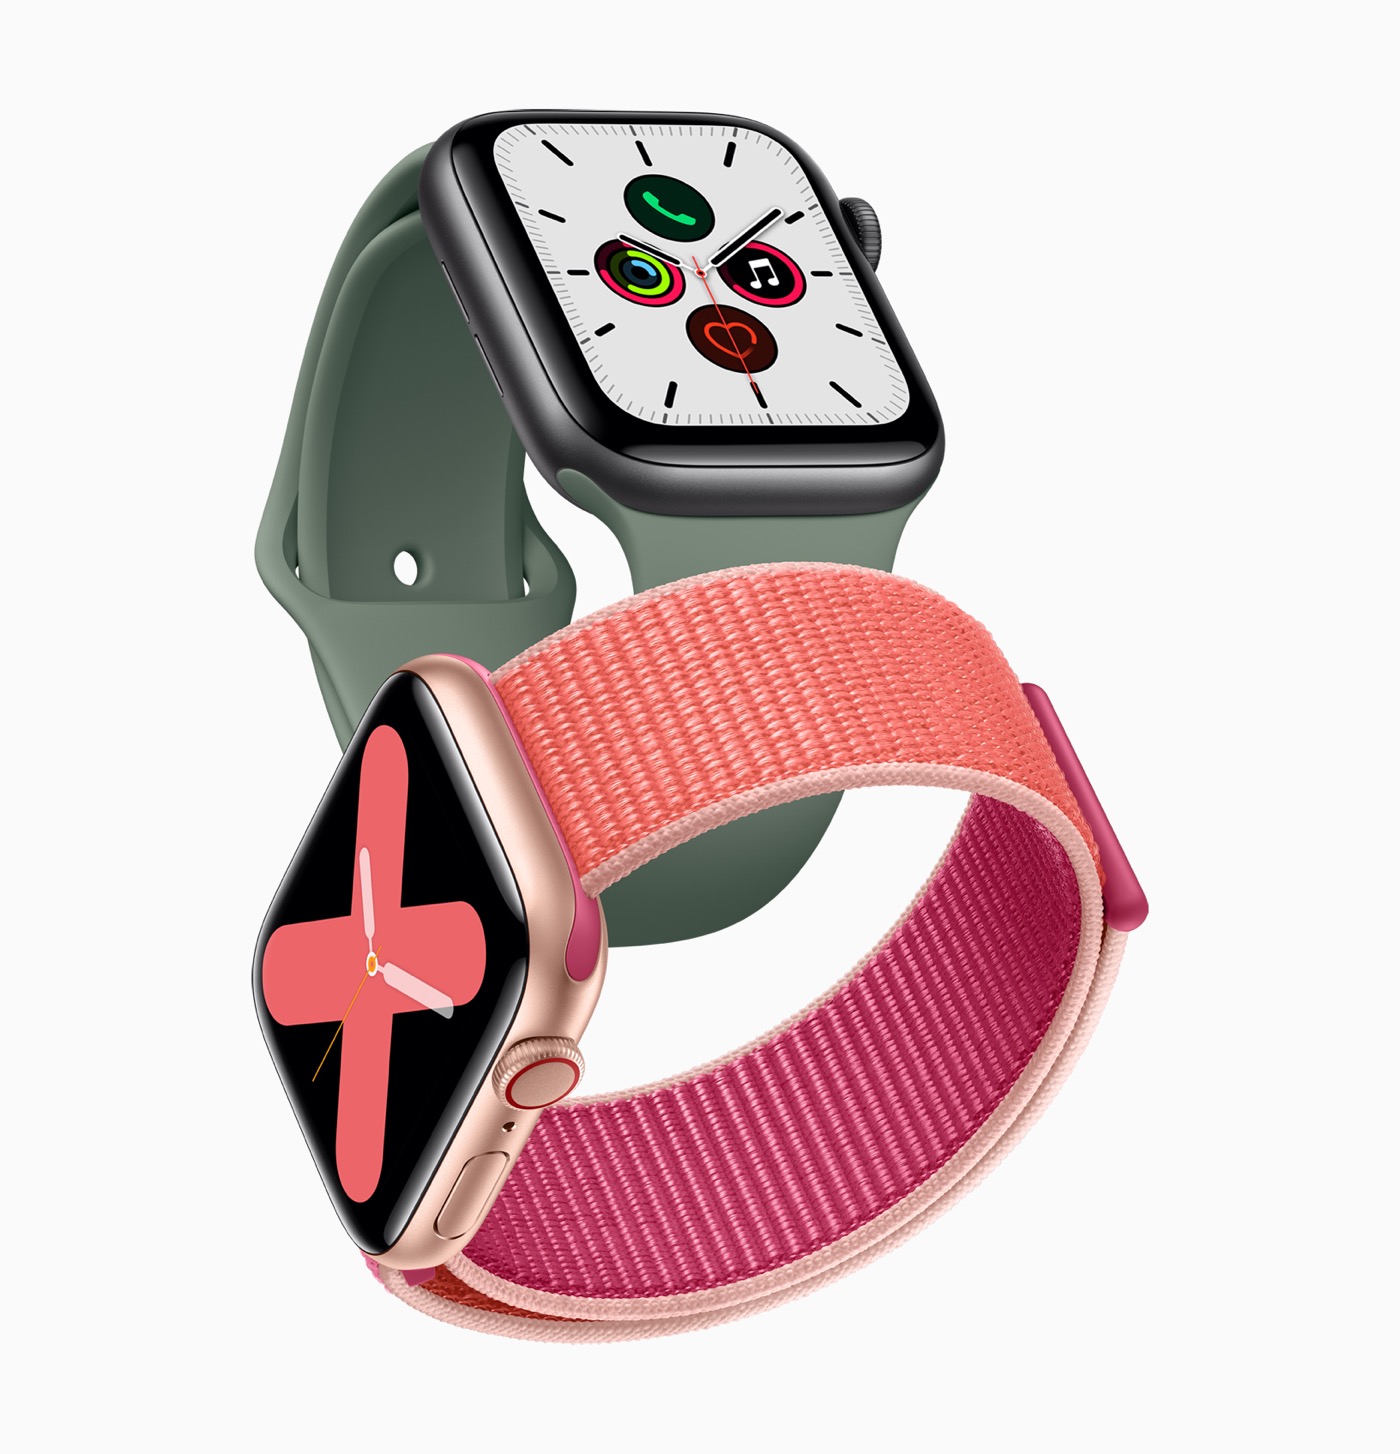 ｢Apple Watch Series 6｣は引き続きジャパンディスプレイの有機ELディスプレイを採用